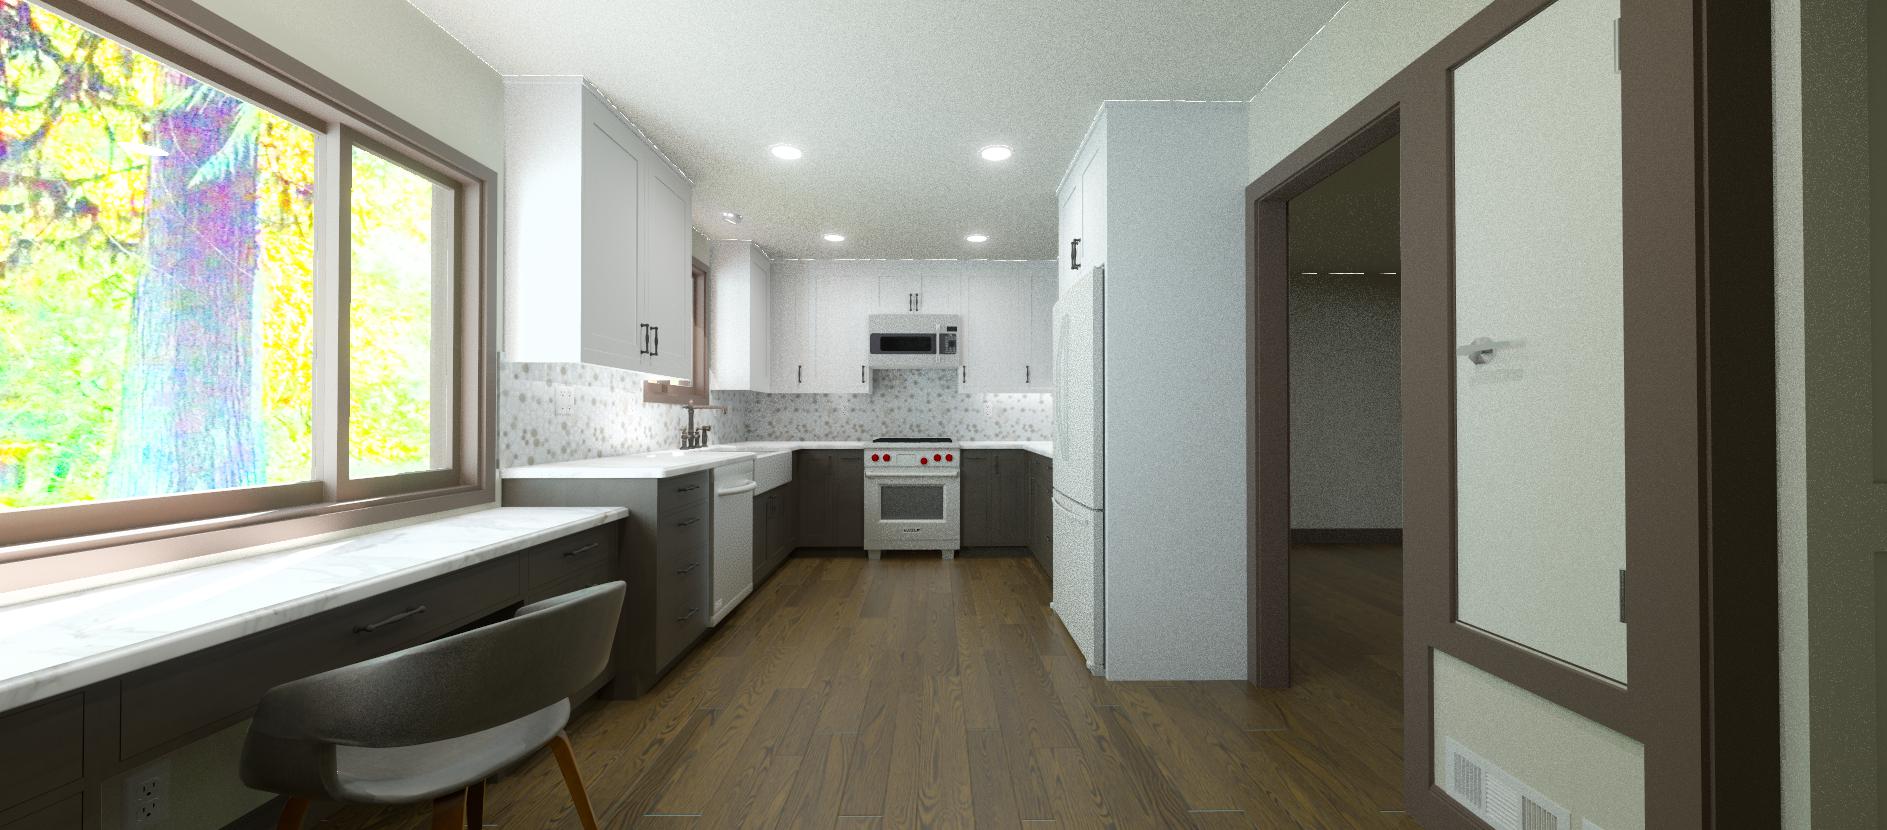 3d design for Kitchen Design - Richmond